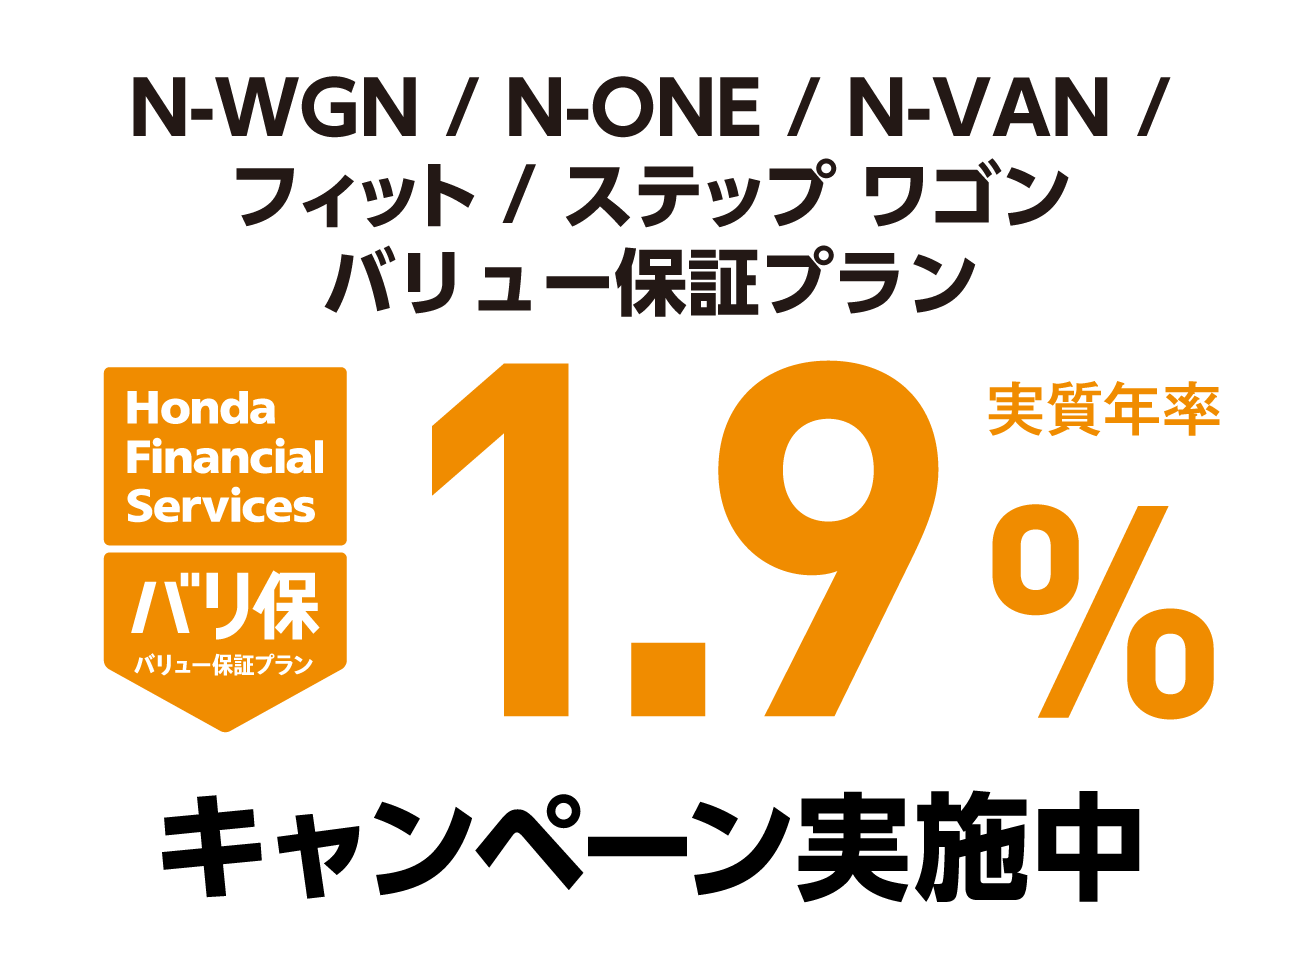 http://N-WGN/N-ONE/N-VAN/フィット/ステップ%20ワゴン%20%20バリュー保証プラン%201.9%キャンペーン実施中